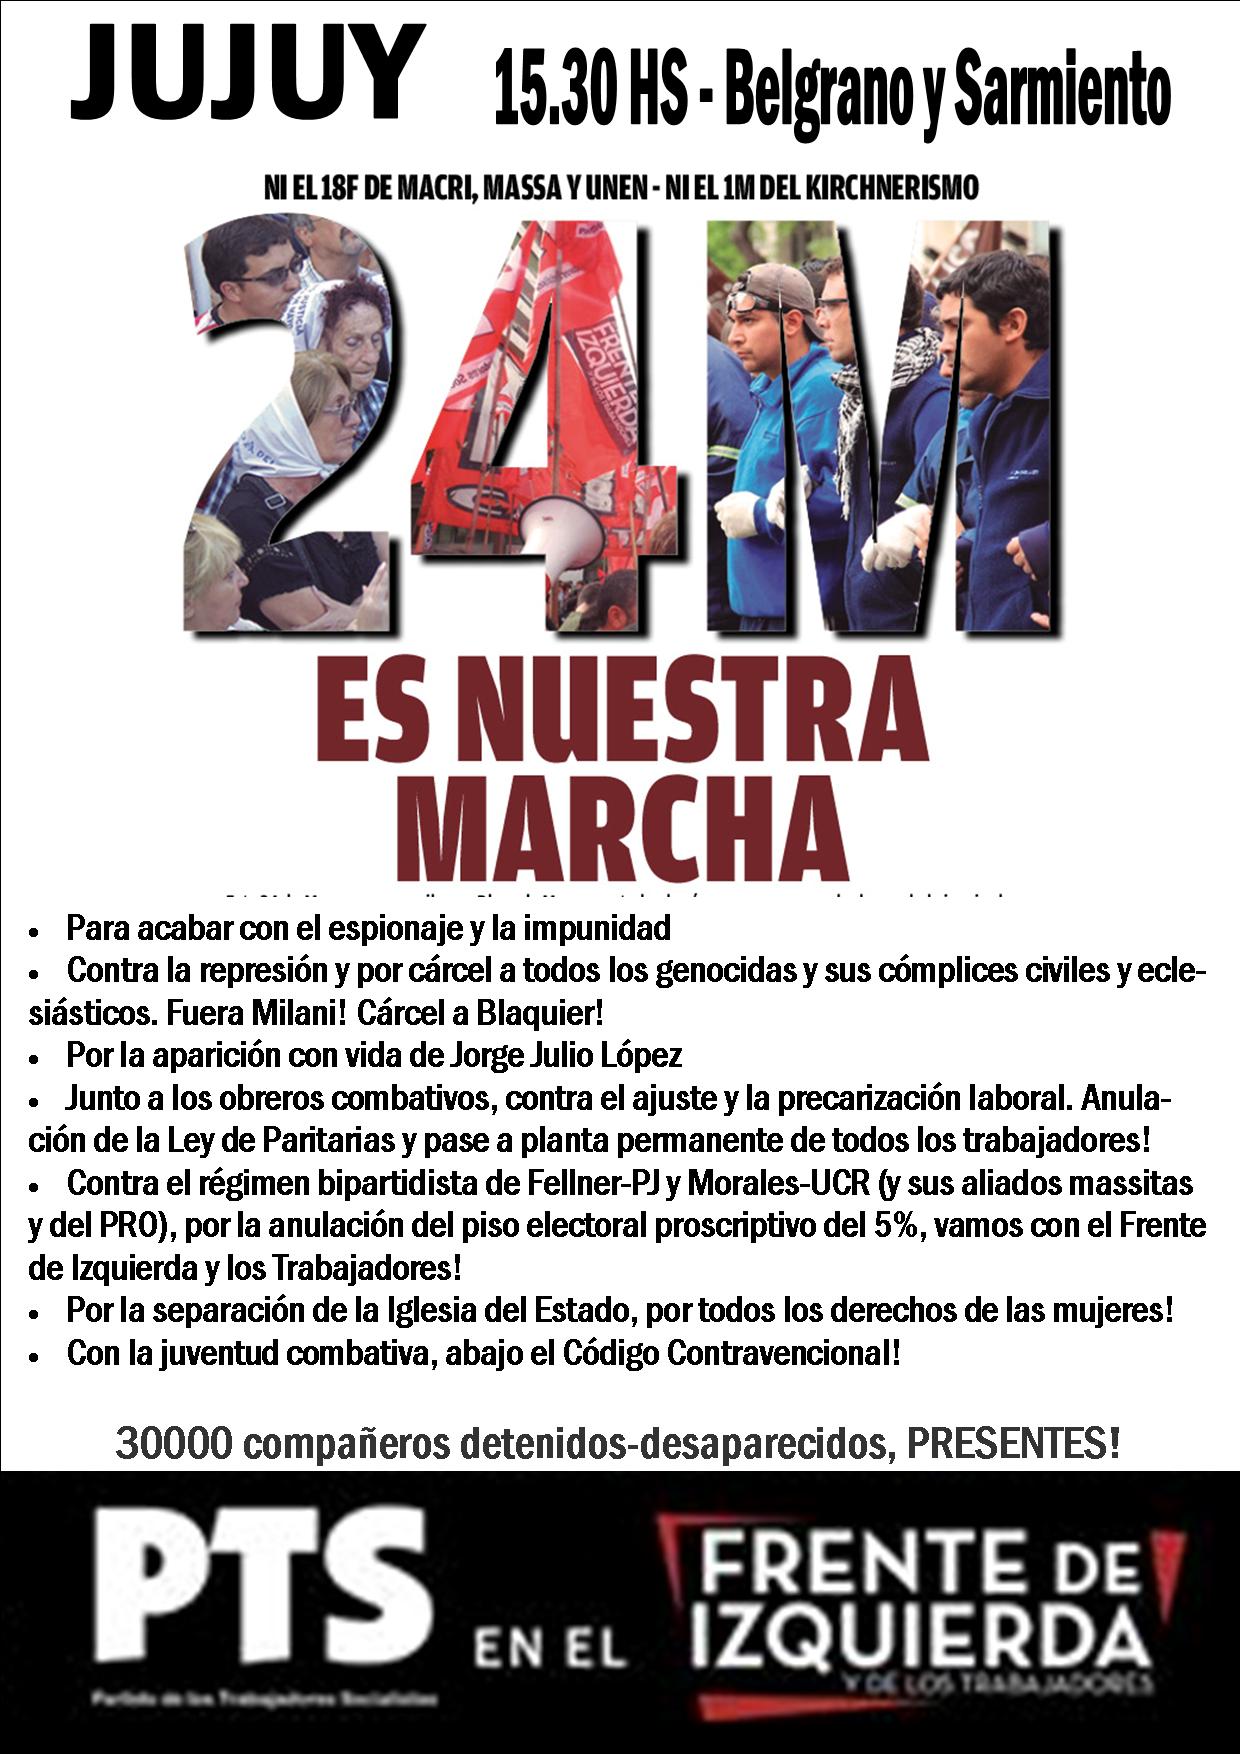 El PTS-Frente de Izquierda marcha hoy 24 en Jujuy por Cárcel a Blaquier y Fuera Milani